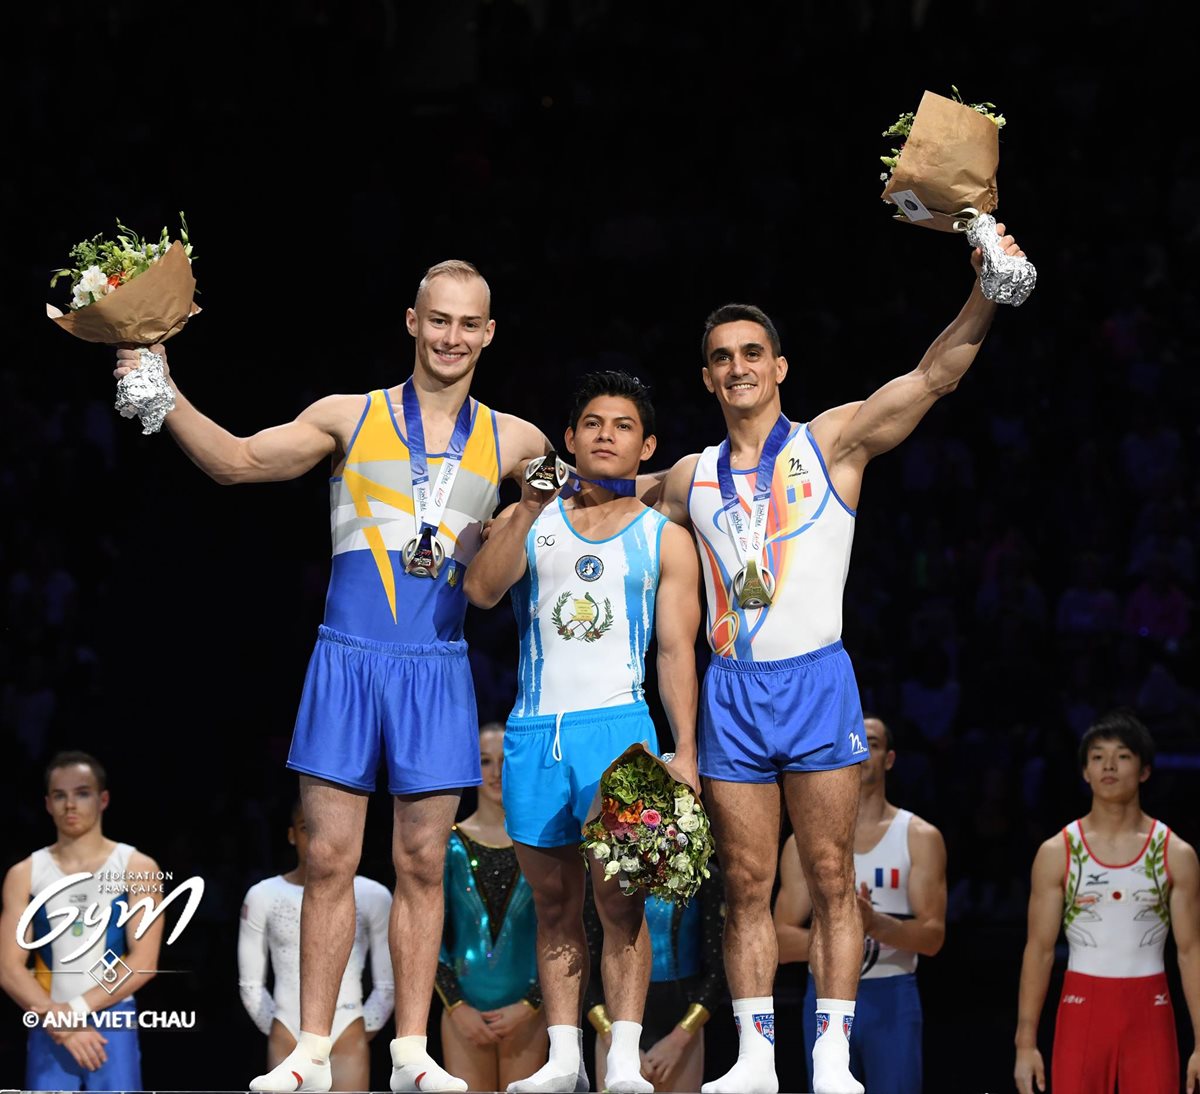 Jorge Vega, gimnasta guatemalteco, gana la medalla de oro en la final de piso de la Copa del Mundo de Gimnasia. (Foto Prensa Libre: cortesía Fédération Française de Gymnastique)